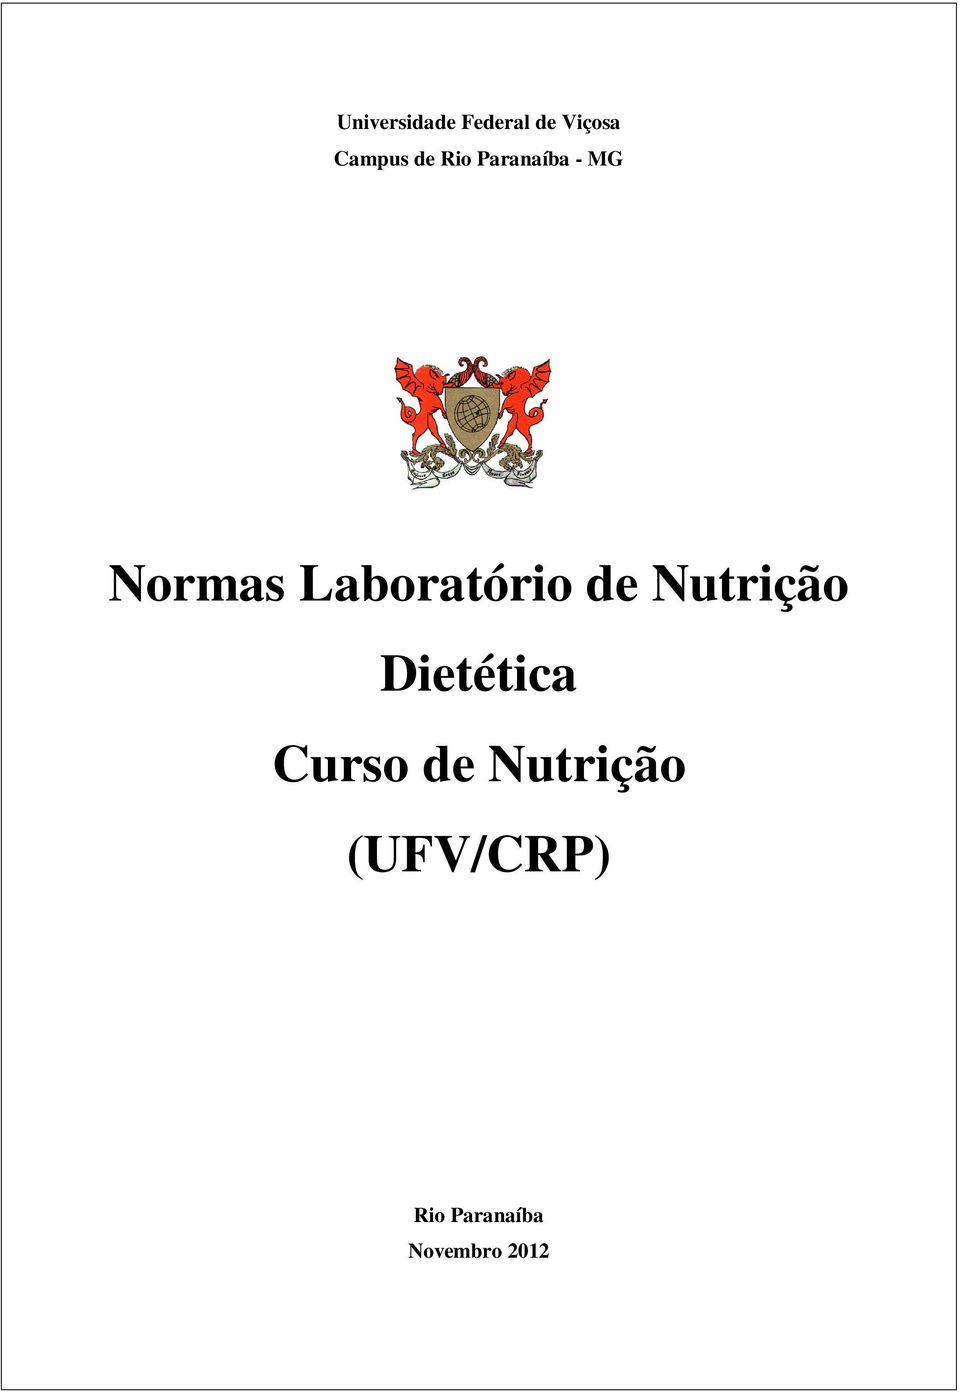 Laboratório de Nutrição Dietética